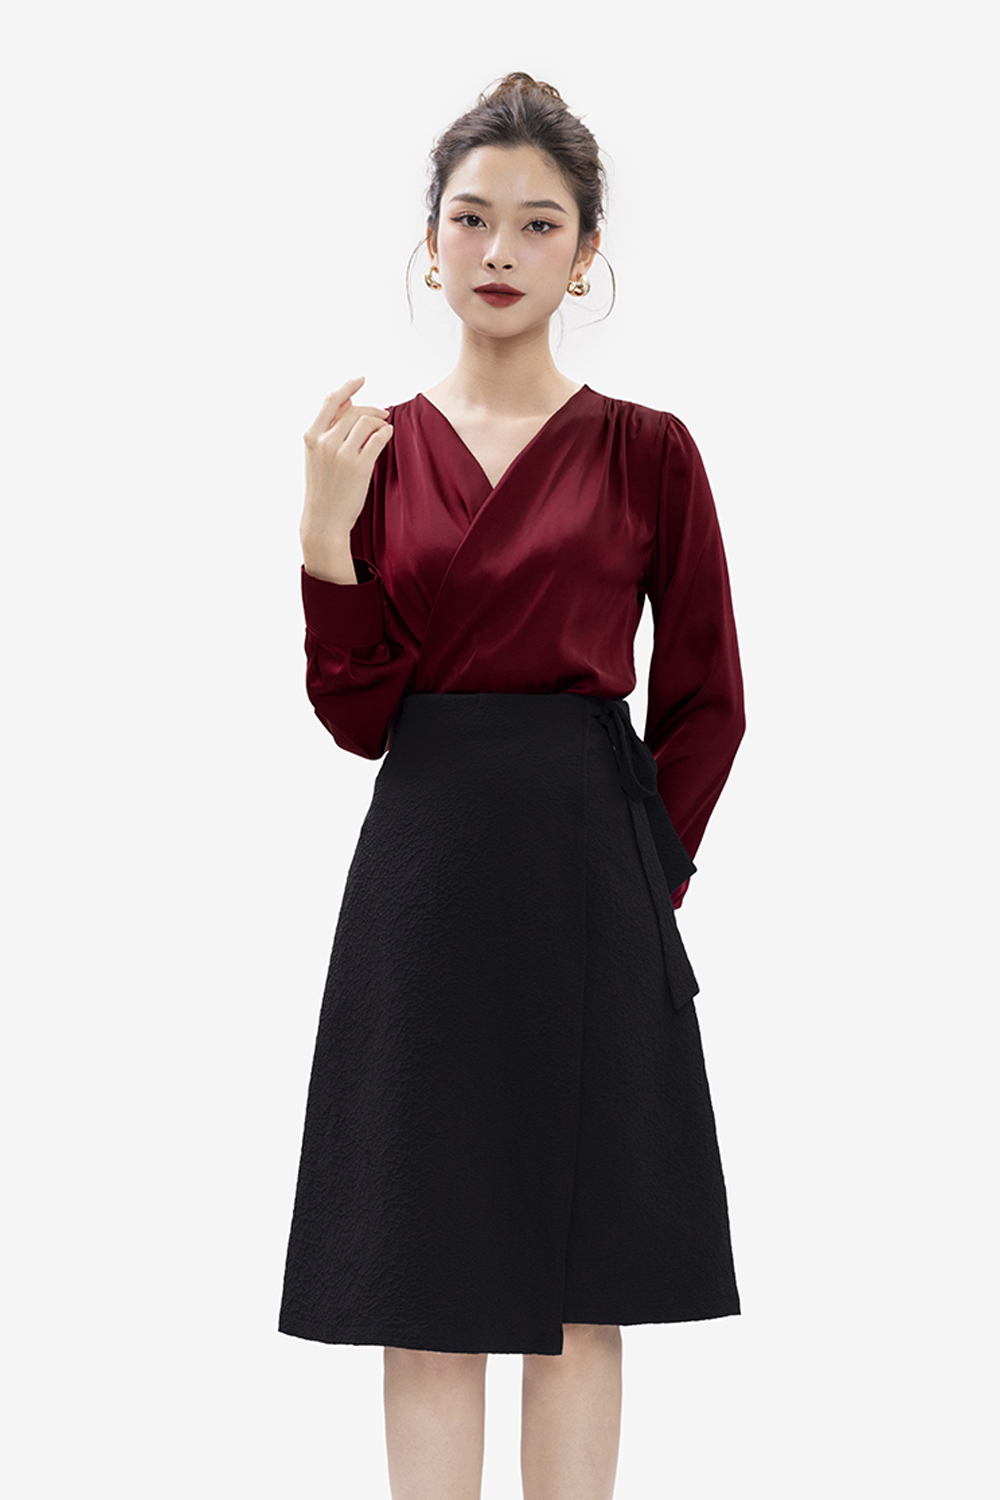 Chân váy midi đen tùng chữ A đắp chéo phối nơ CV06-25 | Thời trang công sở  K&K Fashion